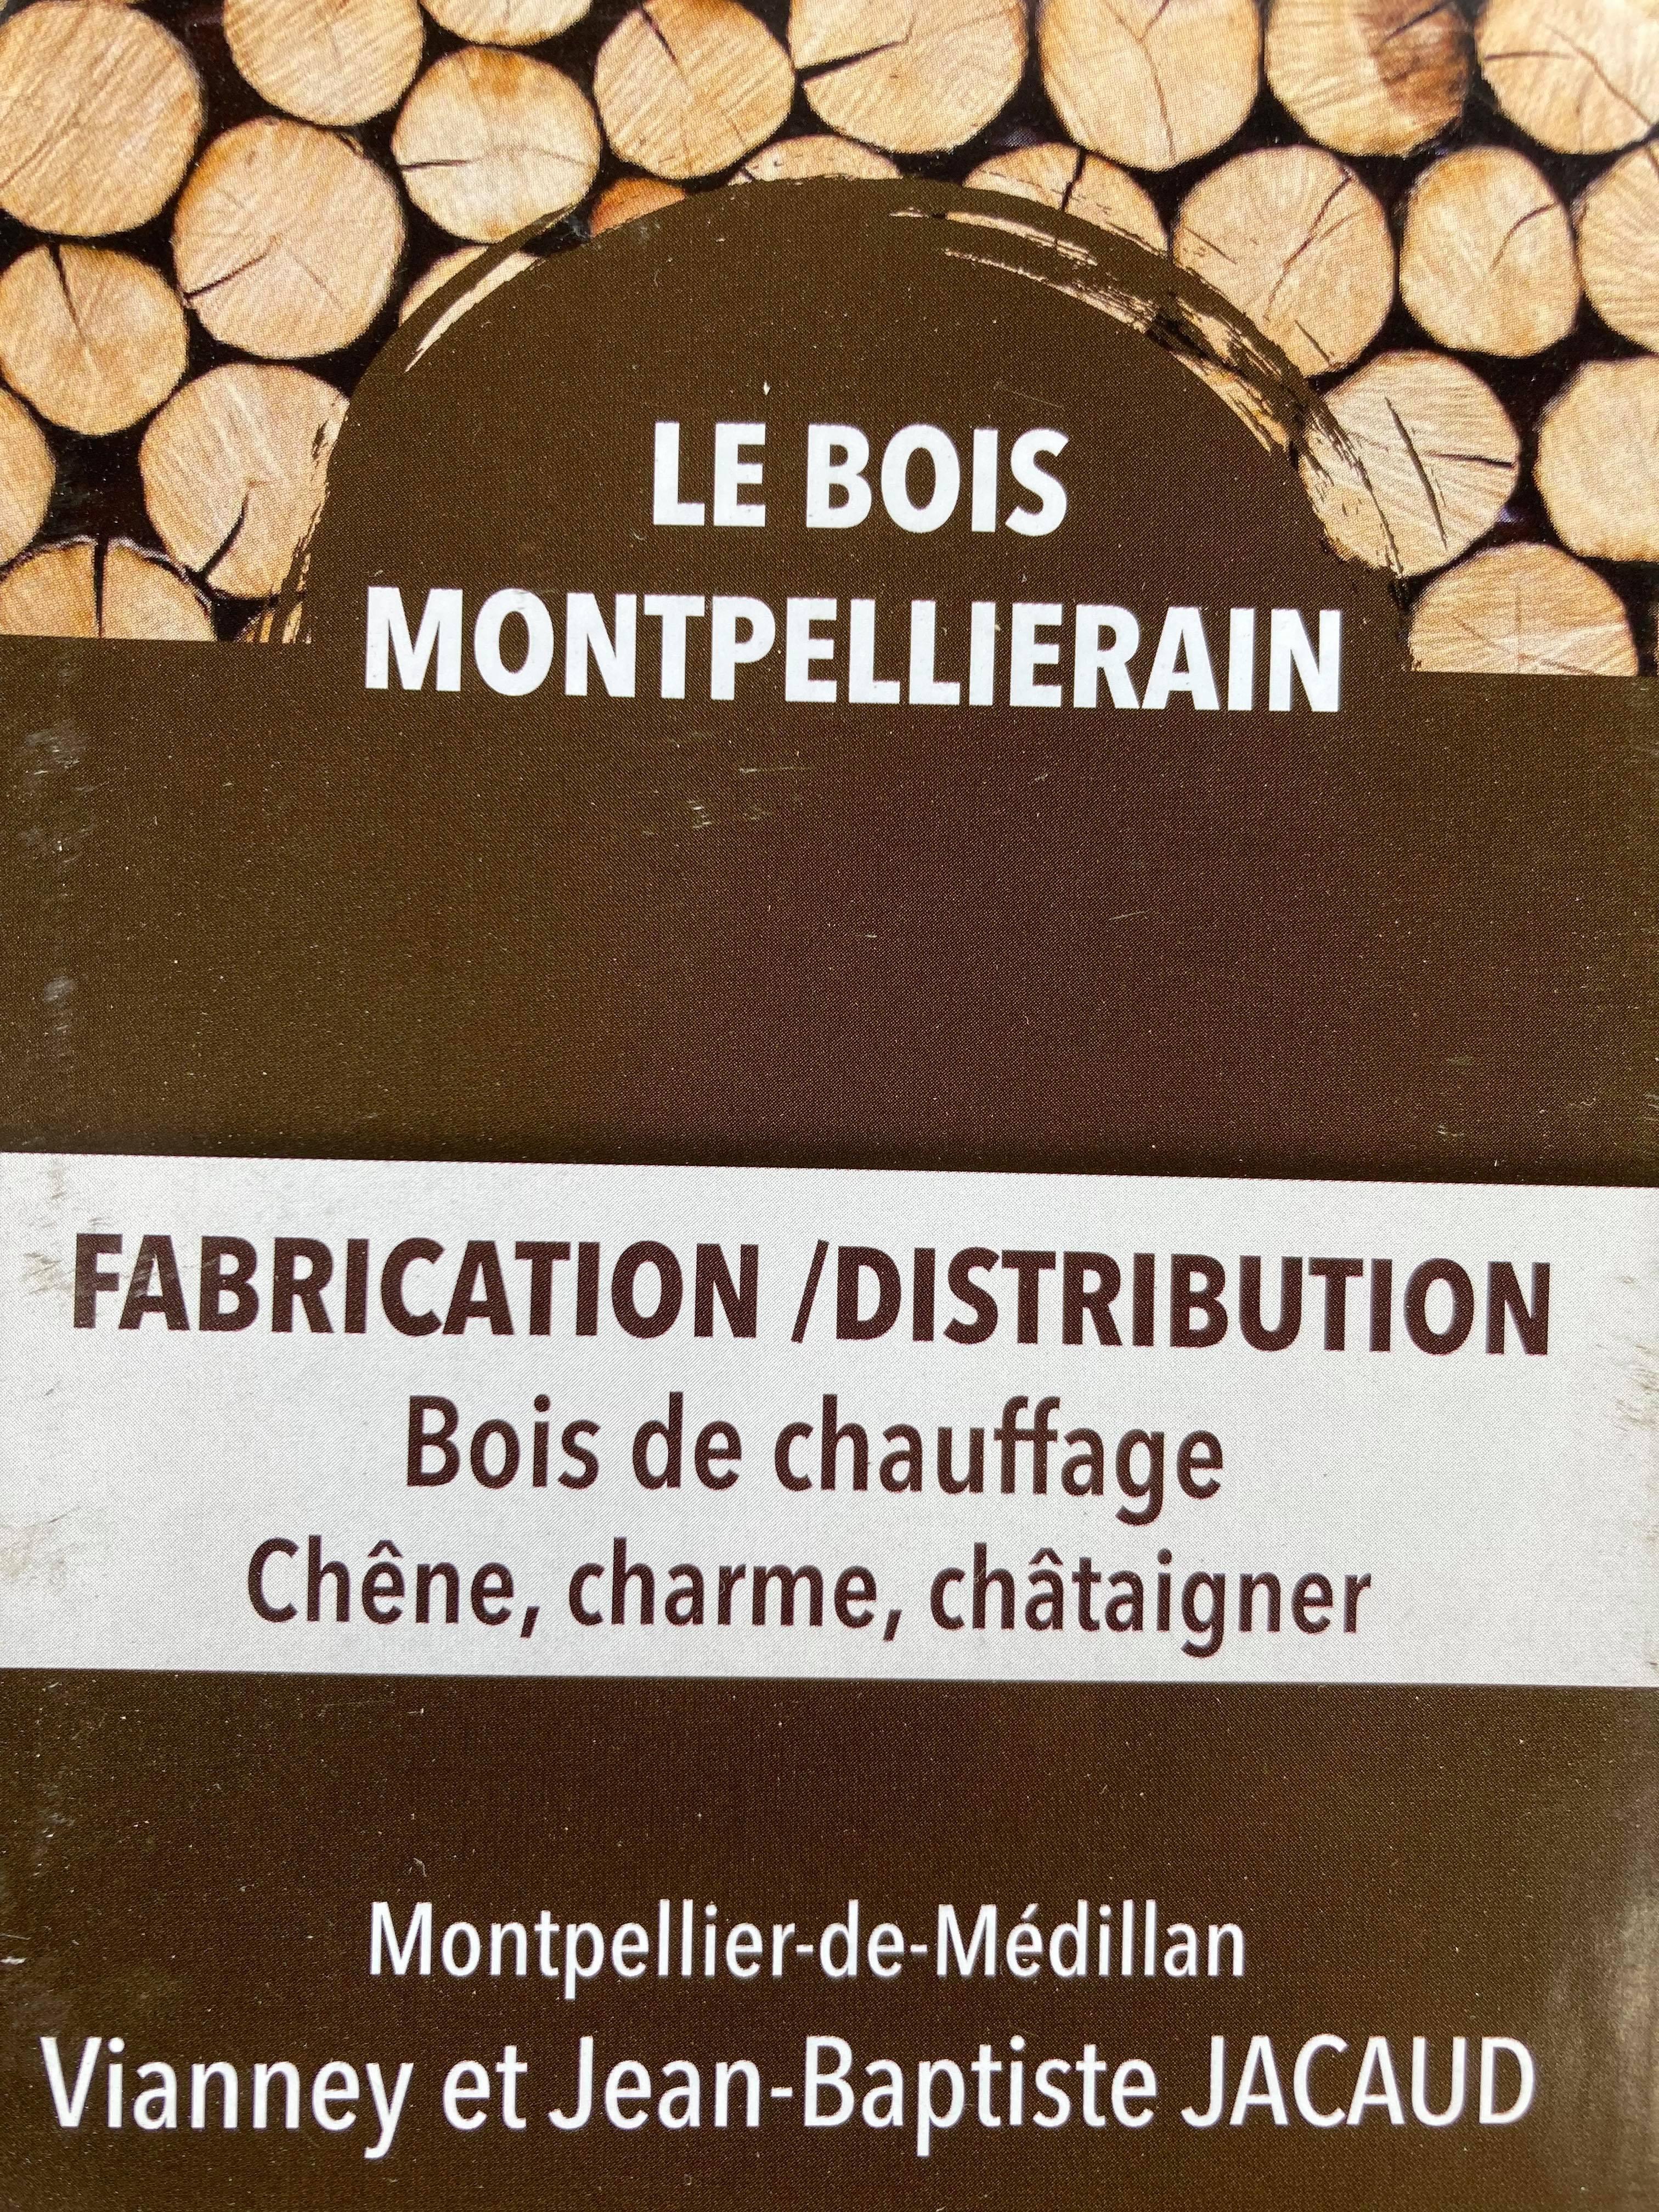 Le Bois Montpellierain Montpellier De Médillan